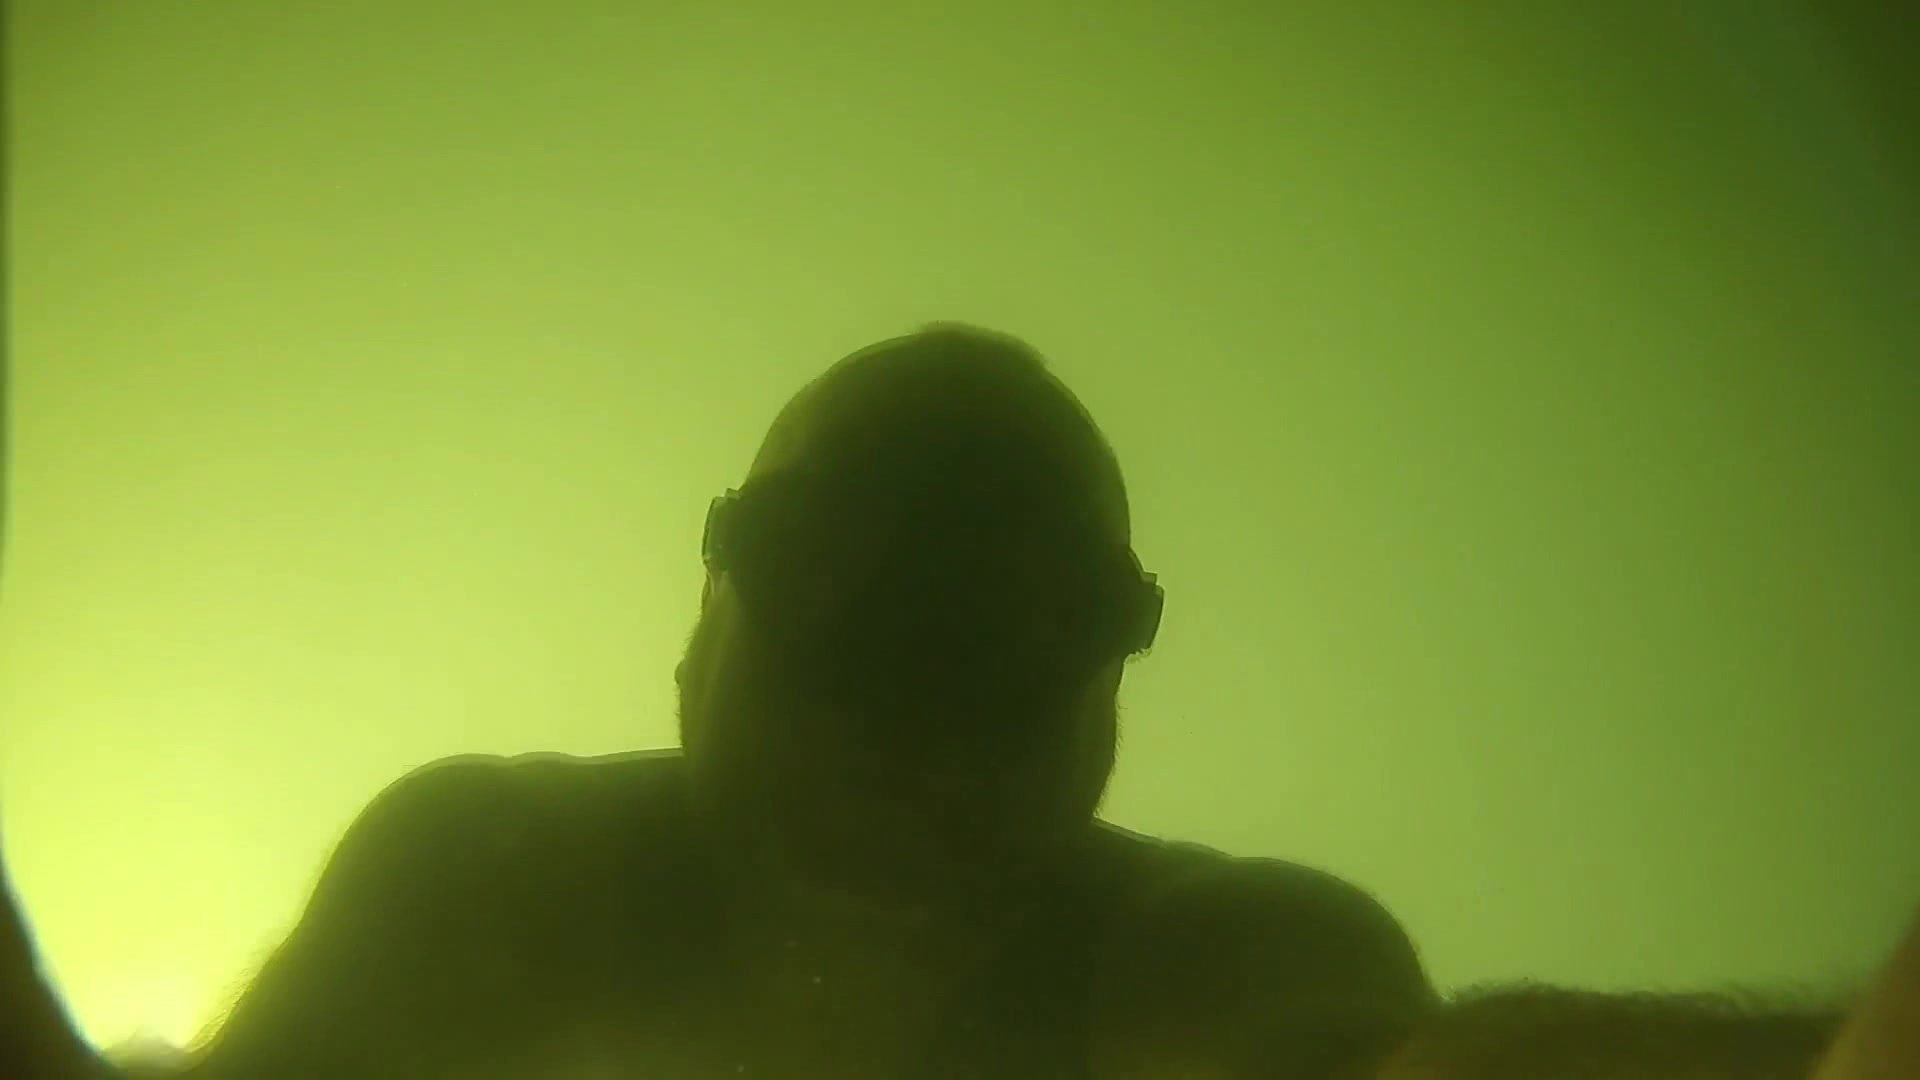 Polish bald freediver breatholding underwater